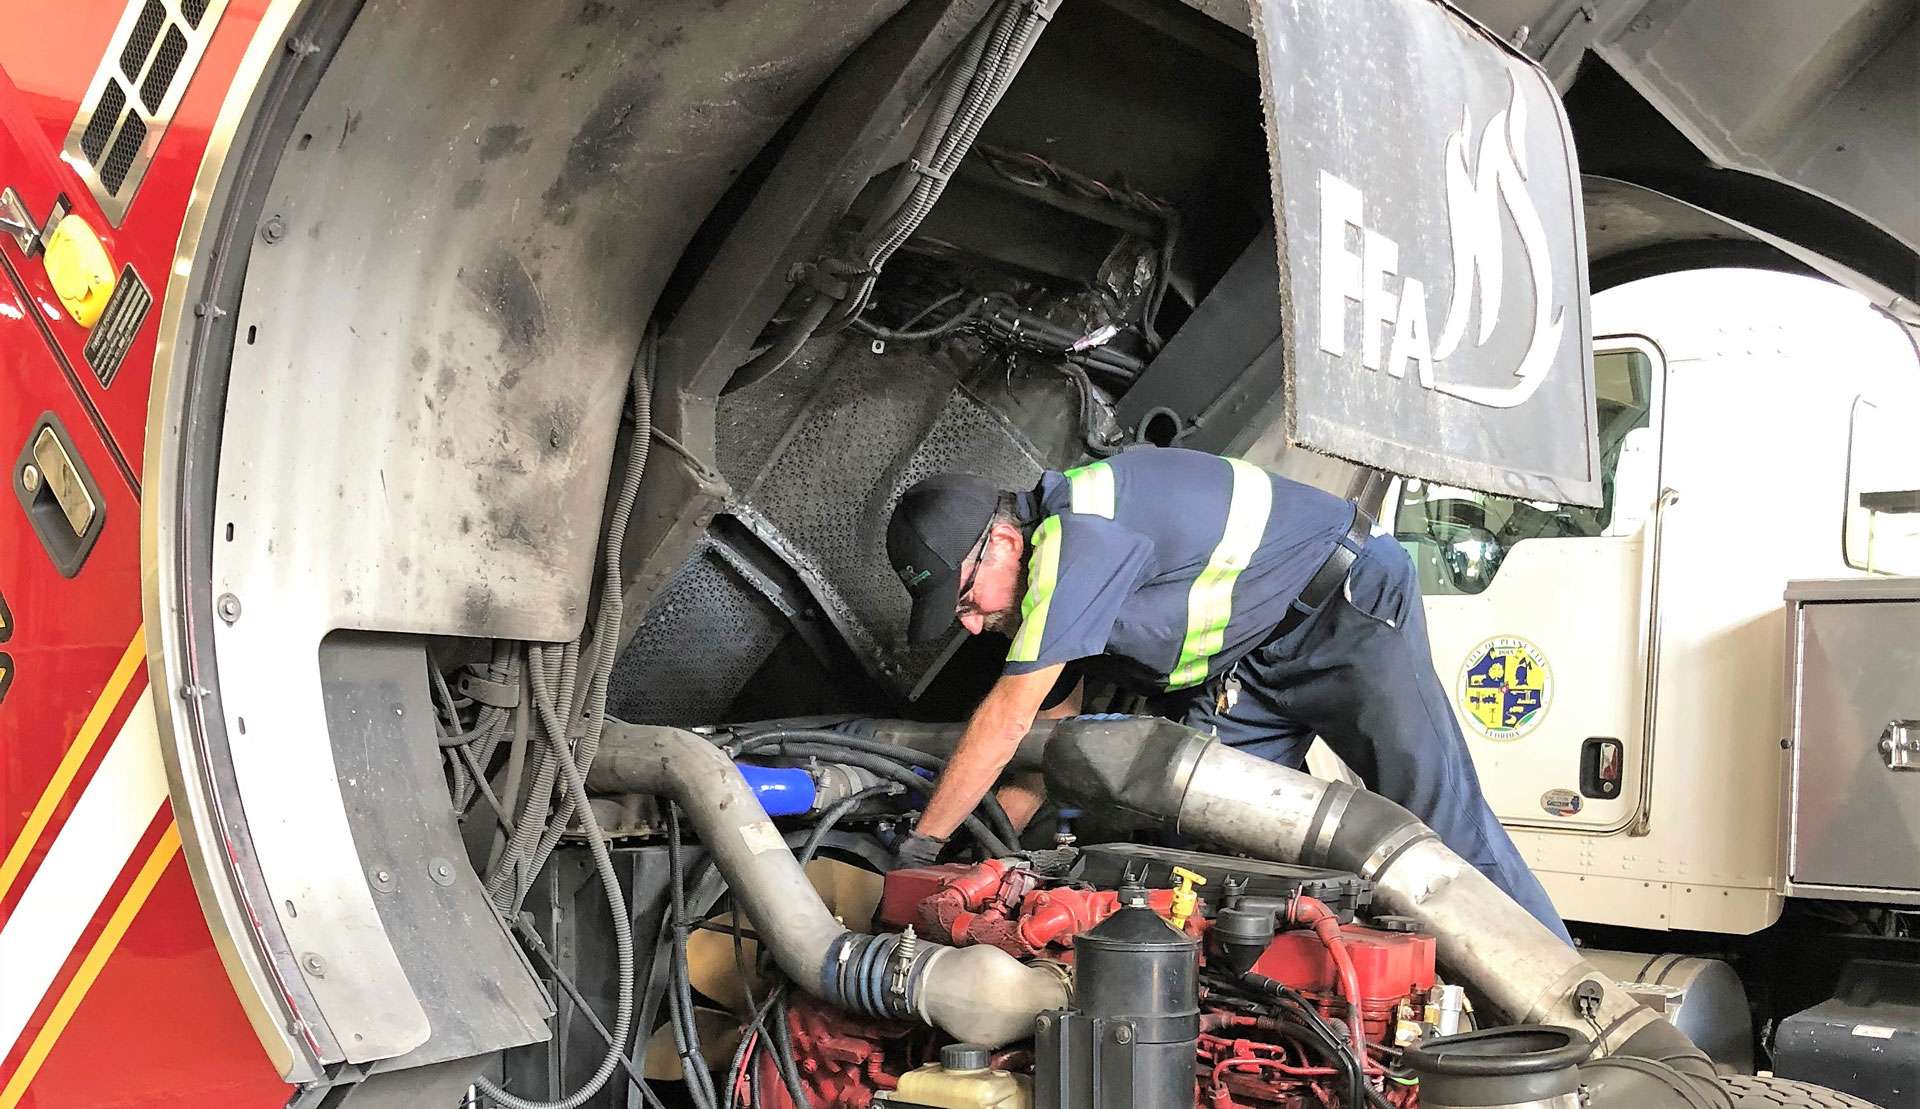 Vector Fleet Management technician working on fire truck